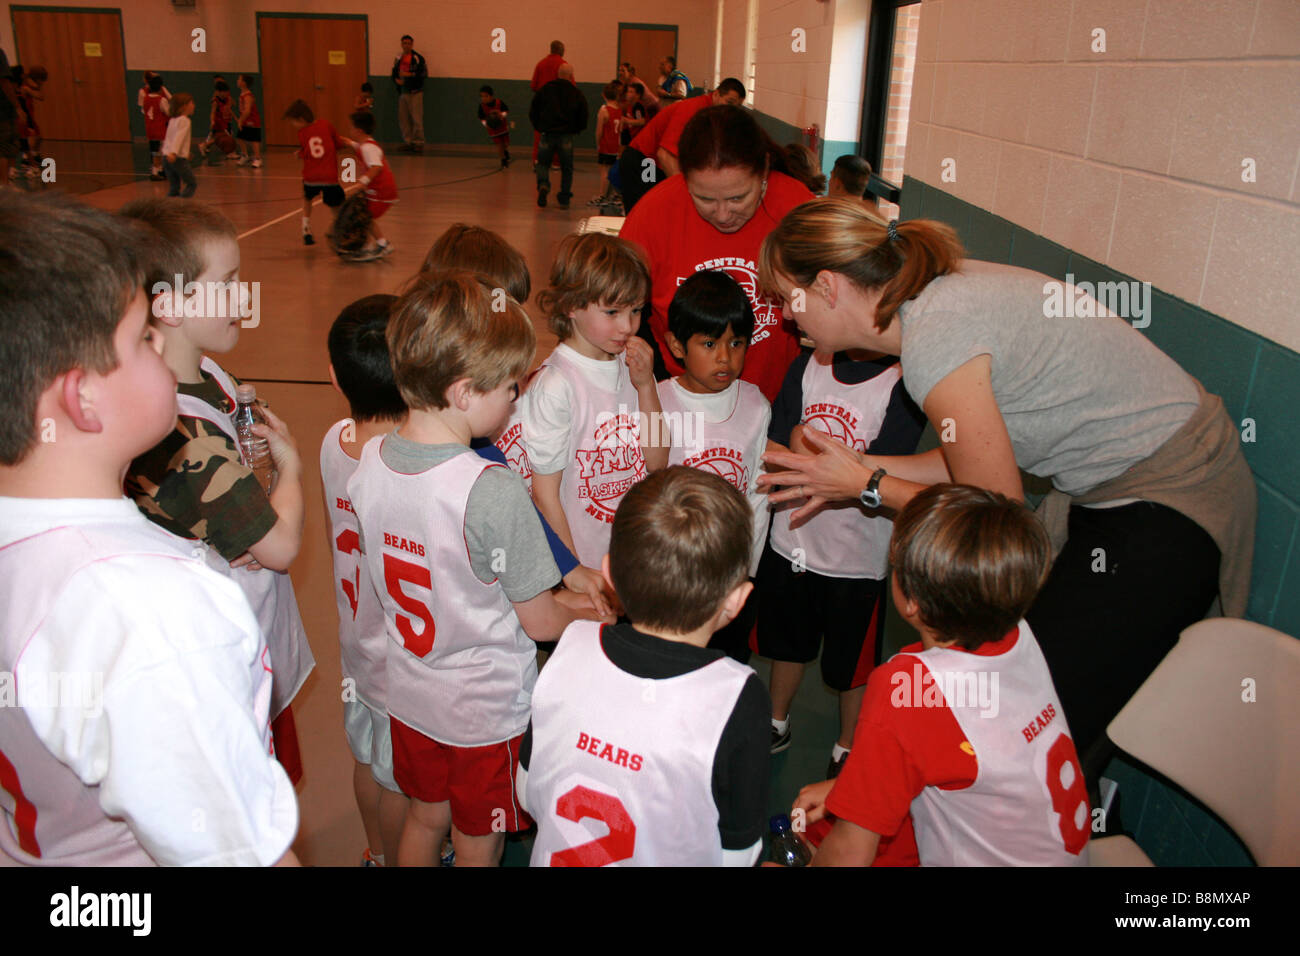 Coach indique à l'équipe de basket-ball des jeunes au cours d'un jeu (9-12 ans) United States, groupe d'enfants dans un gymnase public Banque D'Images